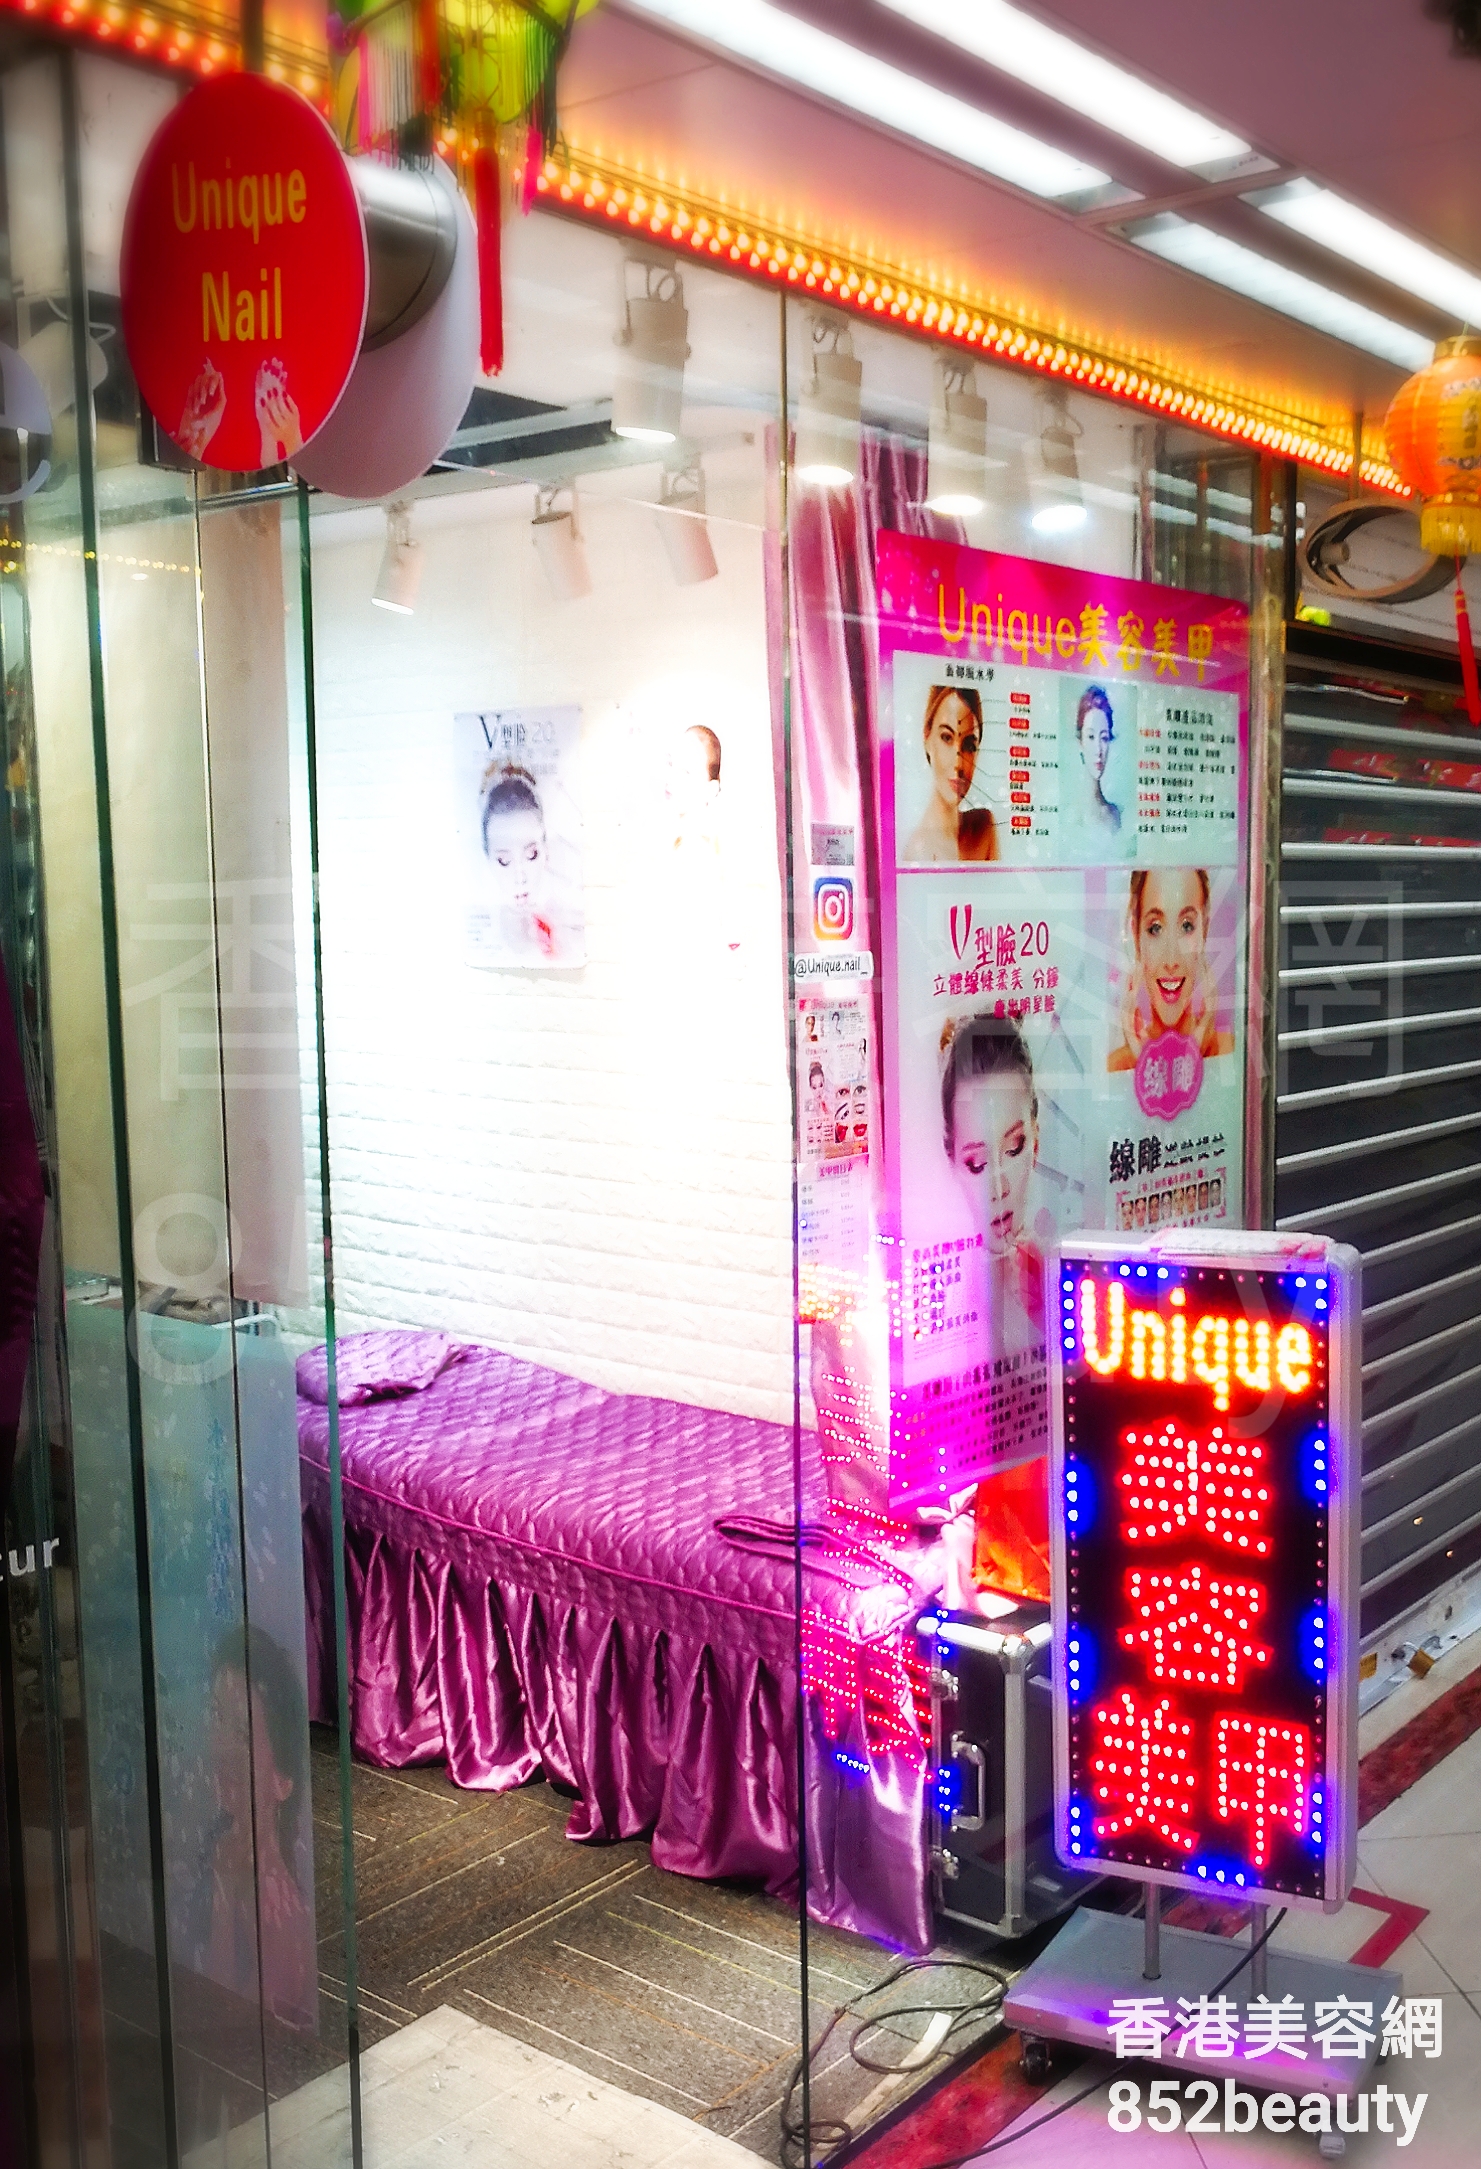 香港美容網 Hong Kong Beauty Salon 美容院 / 美容師: Unique 美容美甲